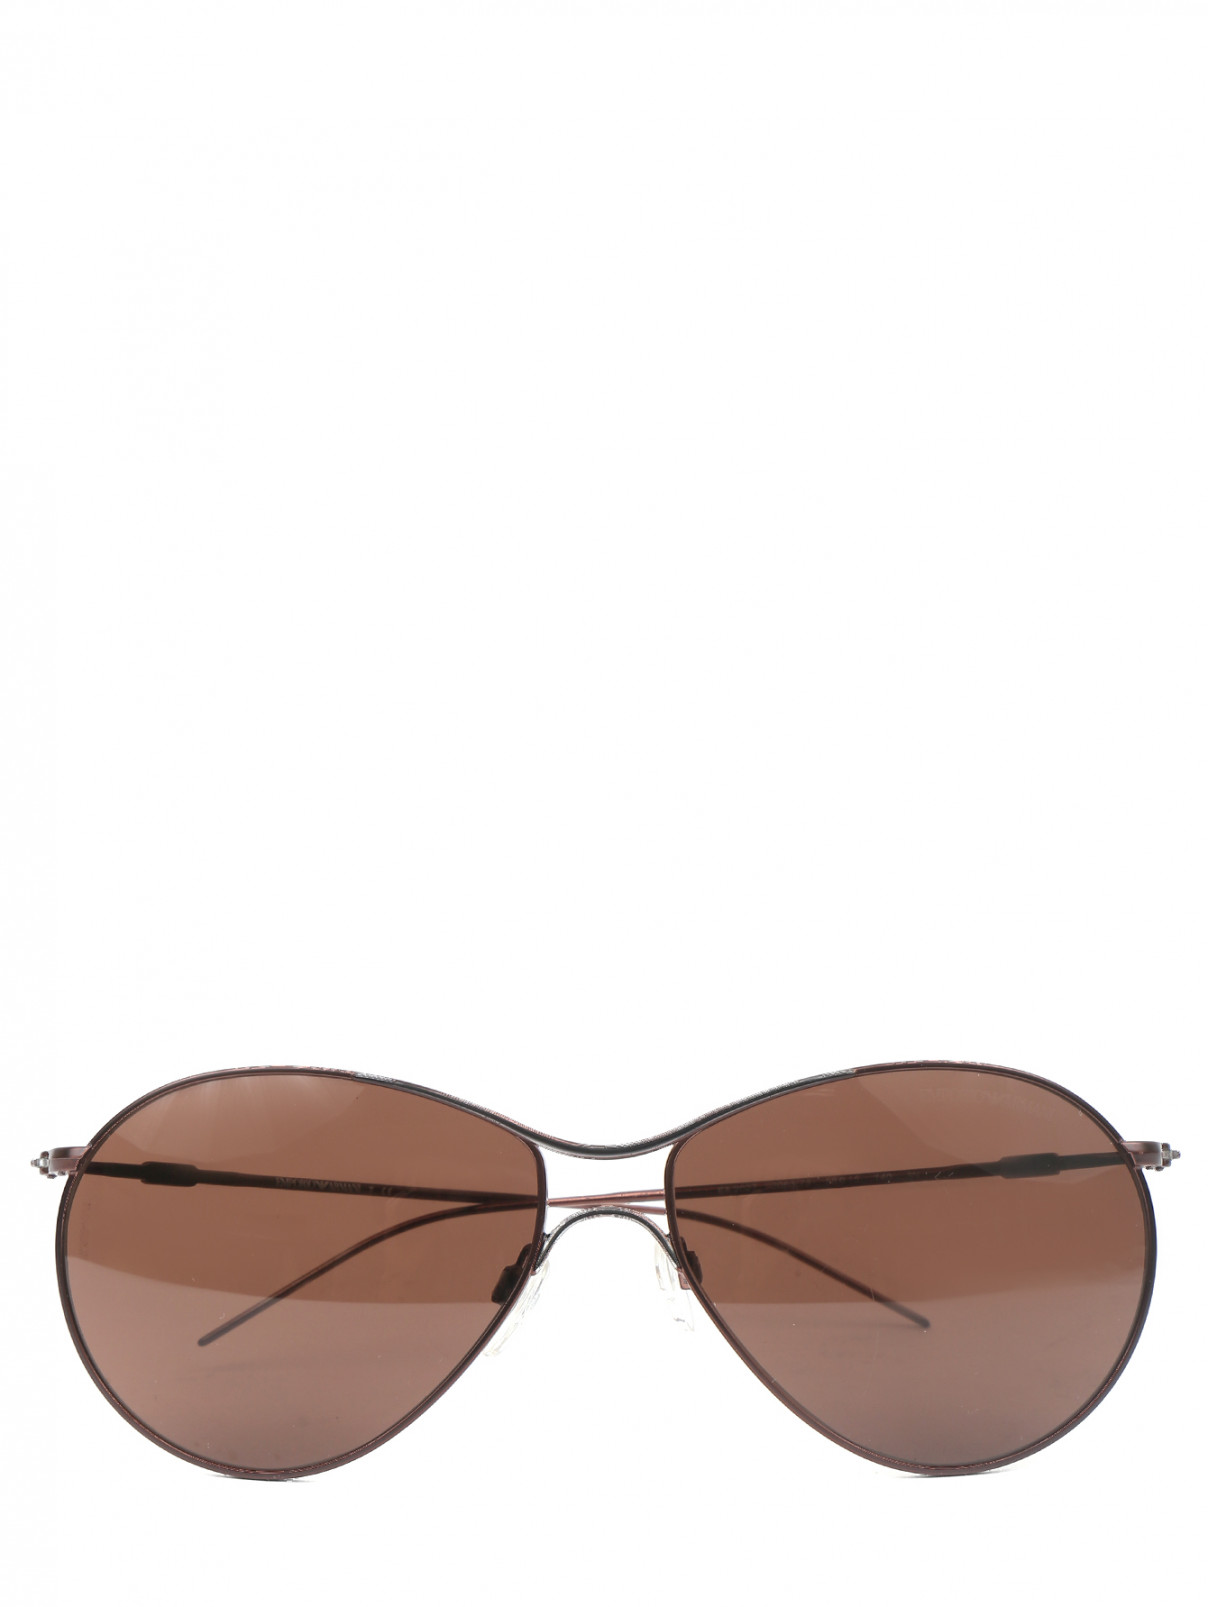 Солнцезащитные очки в оправе из металла Emporio Armani  –  Общий вид  – Цвет:  Коричневый